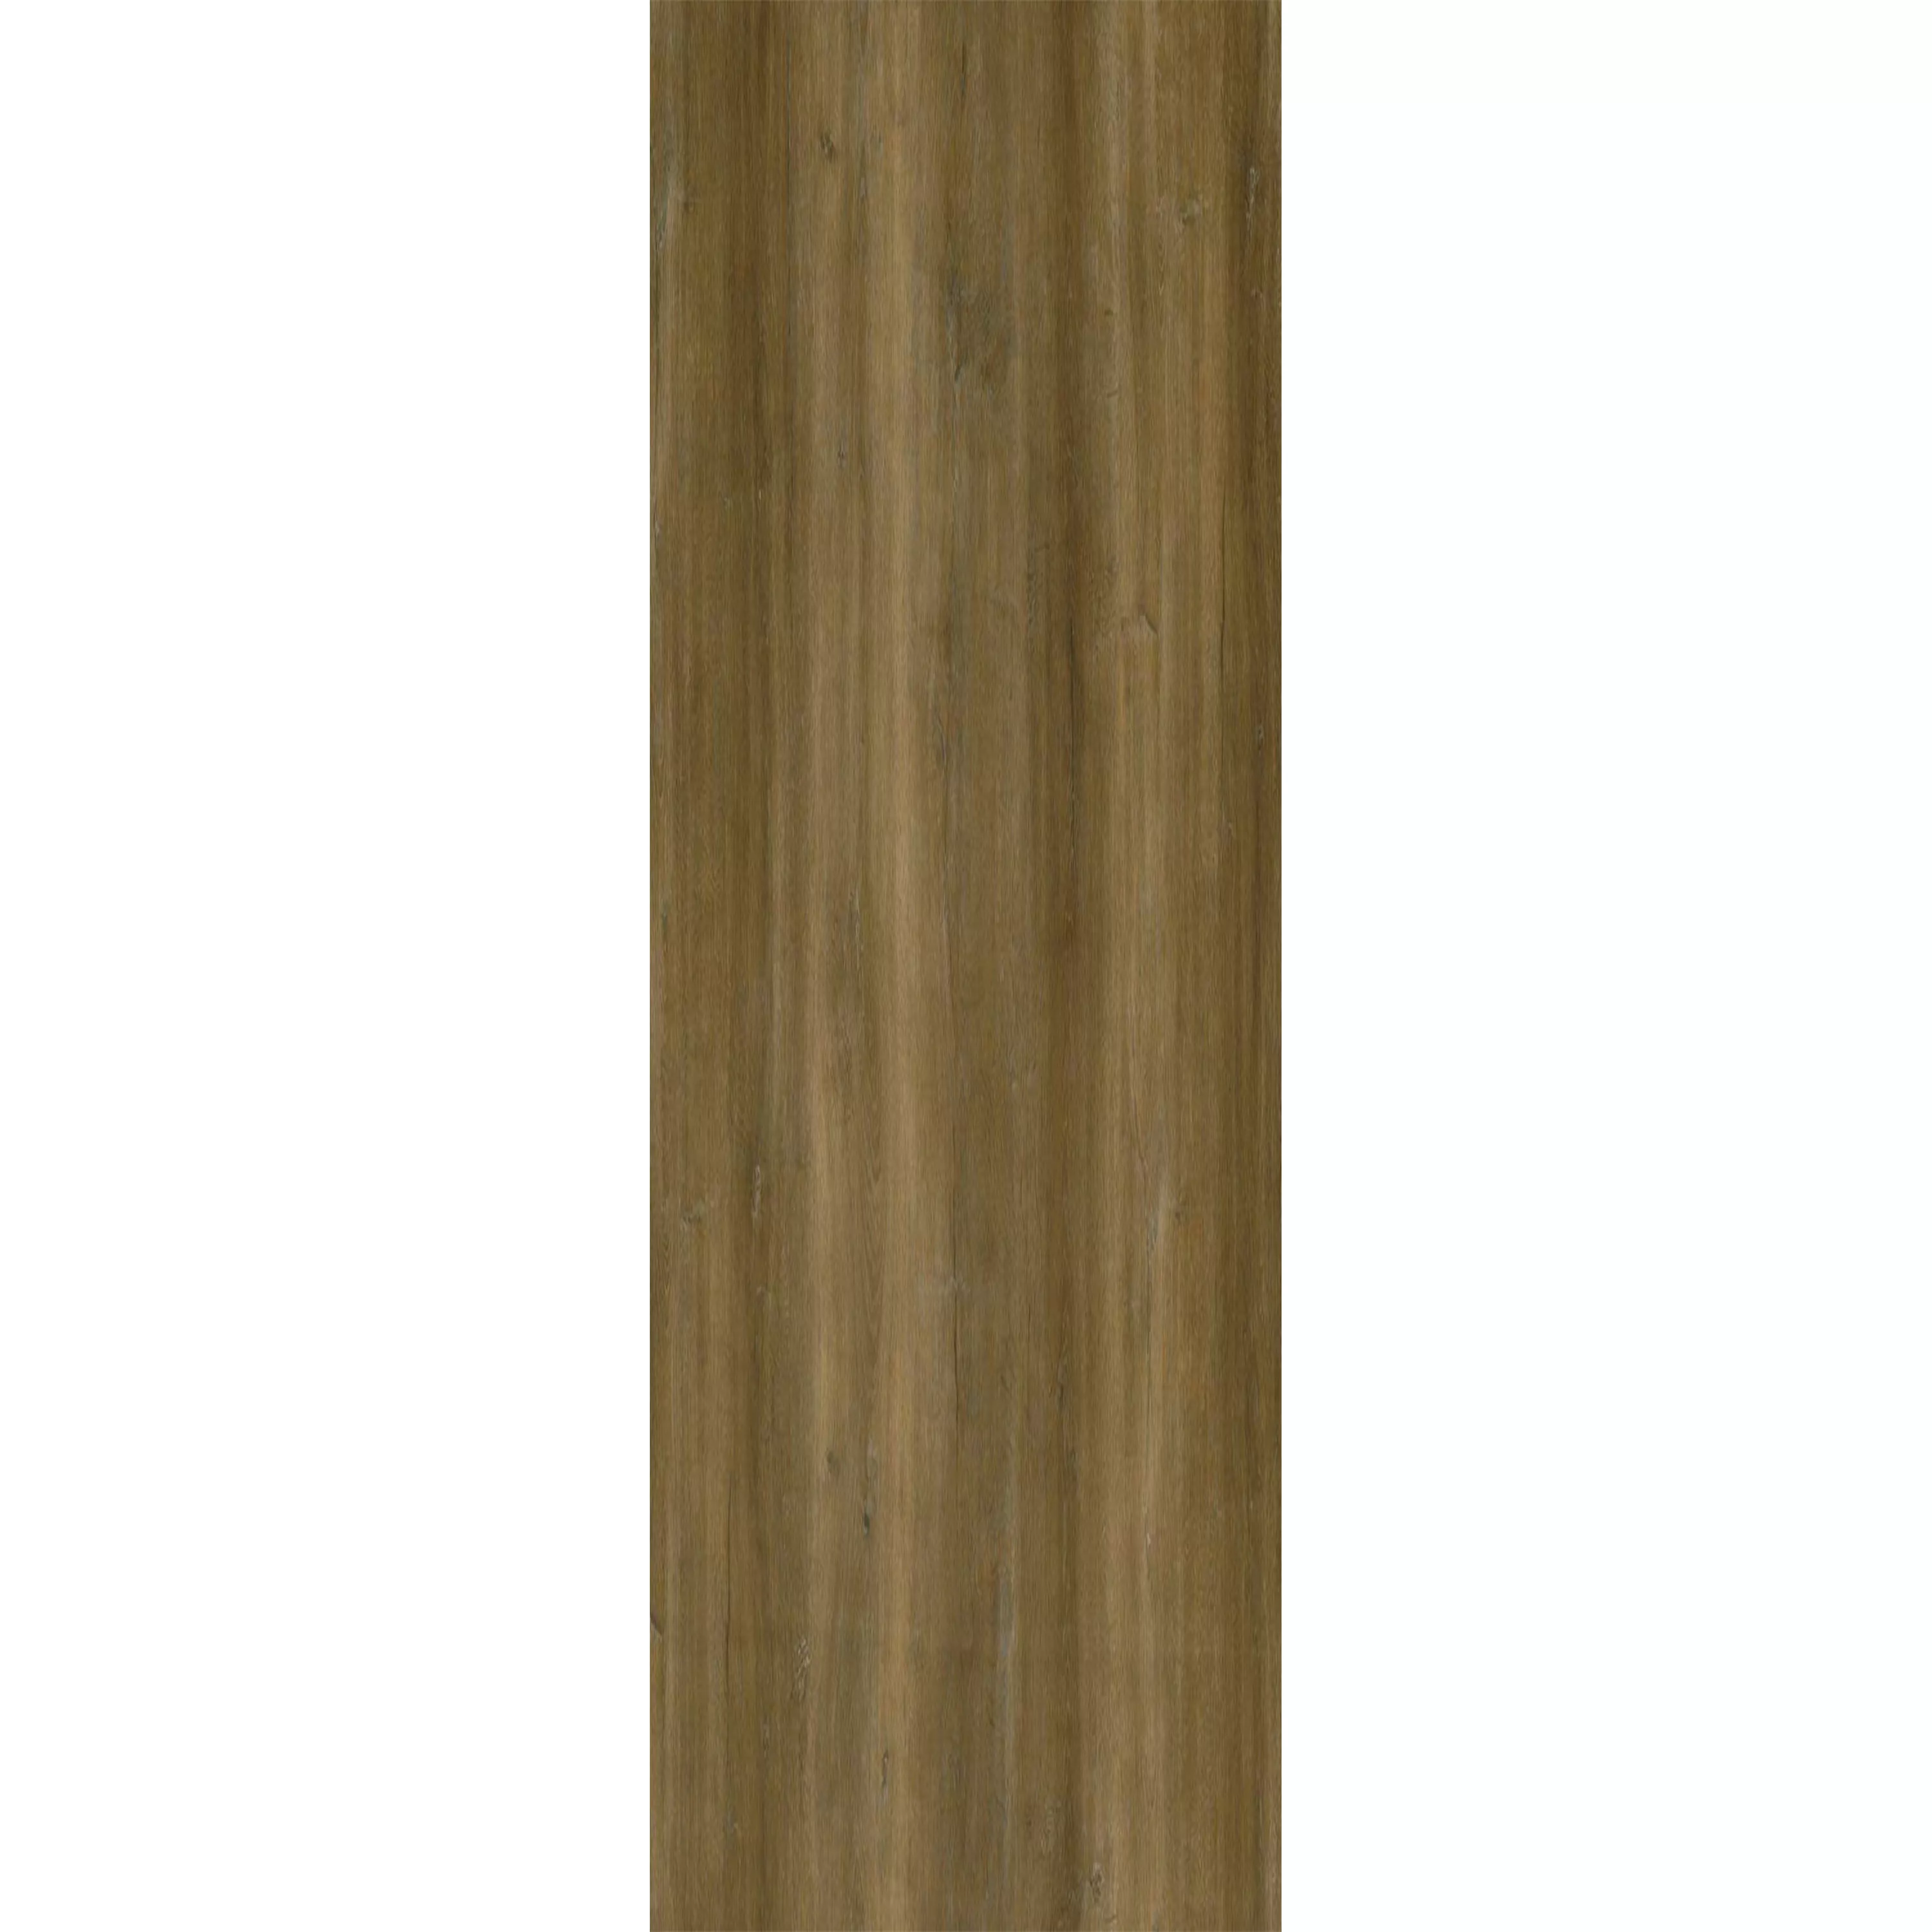 Piastrelle In Vinile Sistema A Clic Dinuba Marrone Chiaro 17,2x121cm